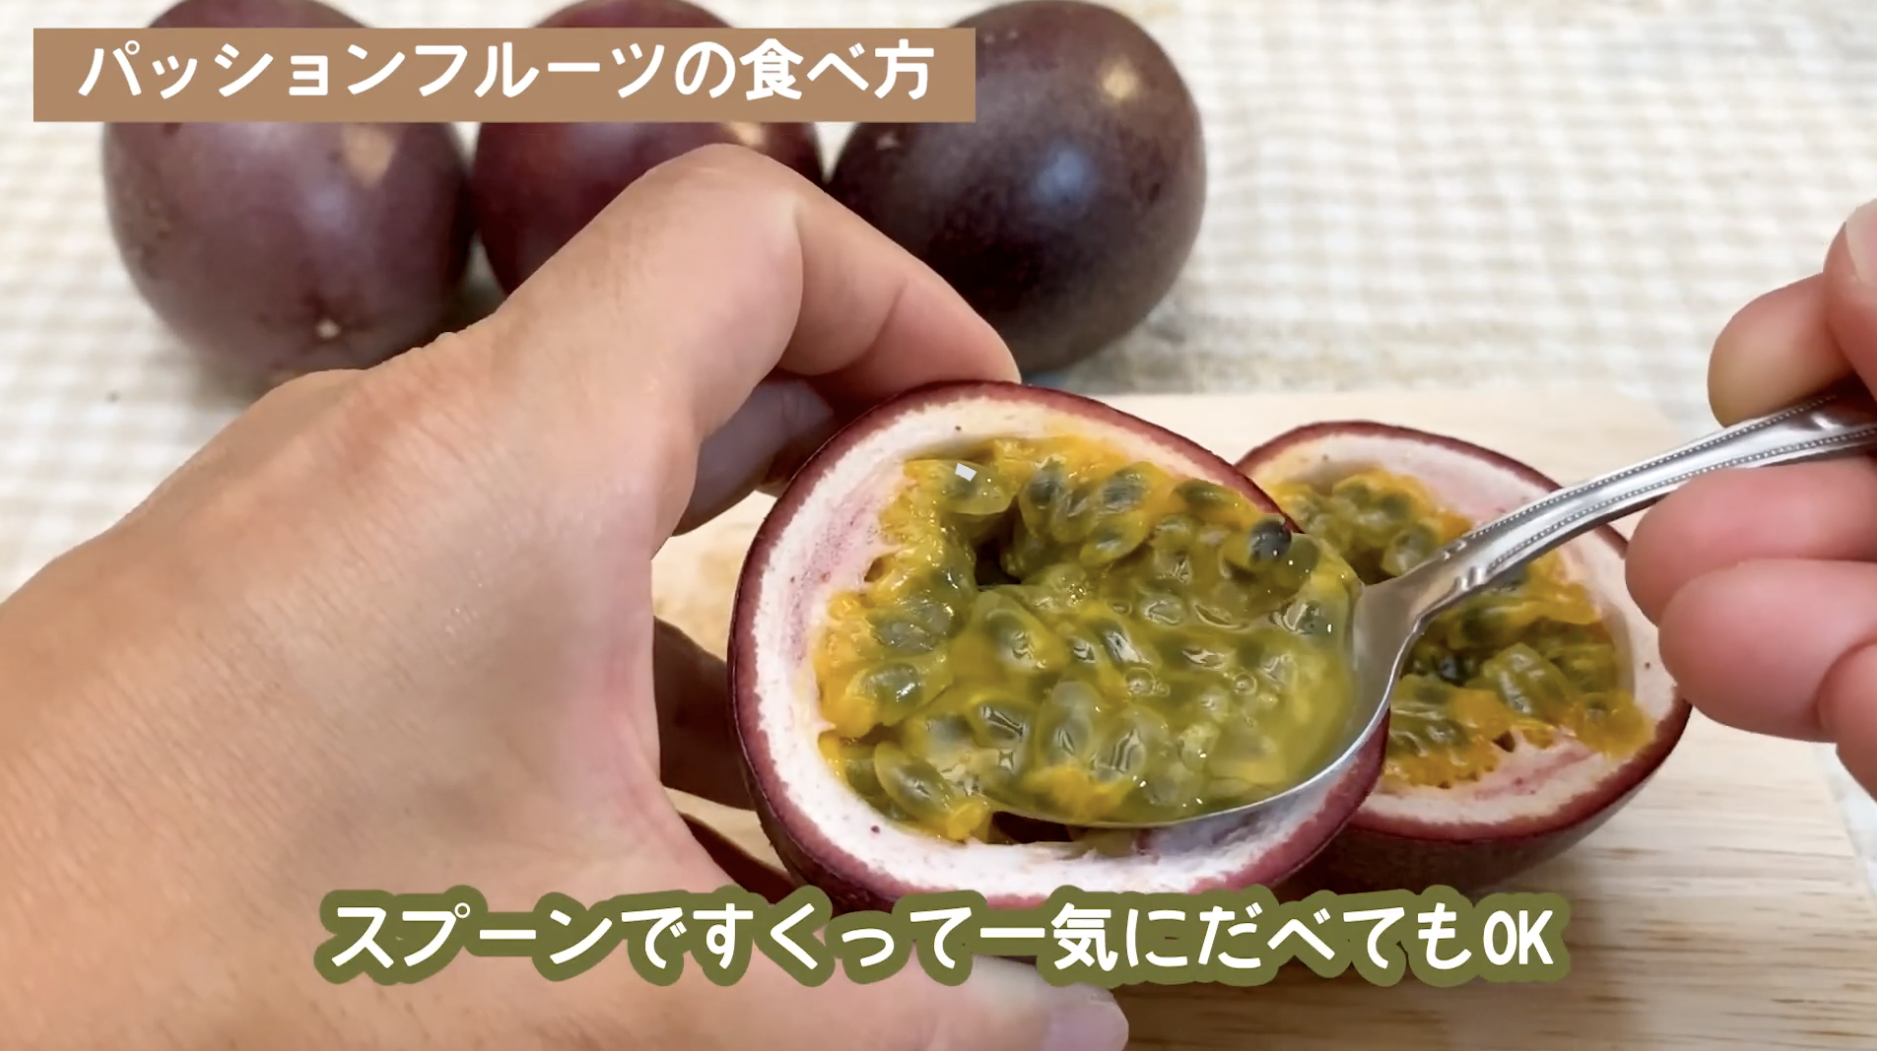 パッションフルーツとは 食べ方 切り方 熟し方 旬な時期 沖縄産直市場 通販時期などご紹介します なるくろ沖縄移住blog